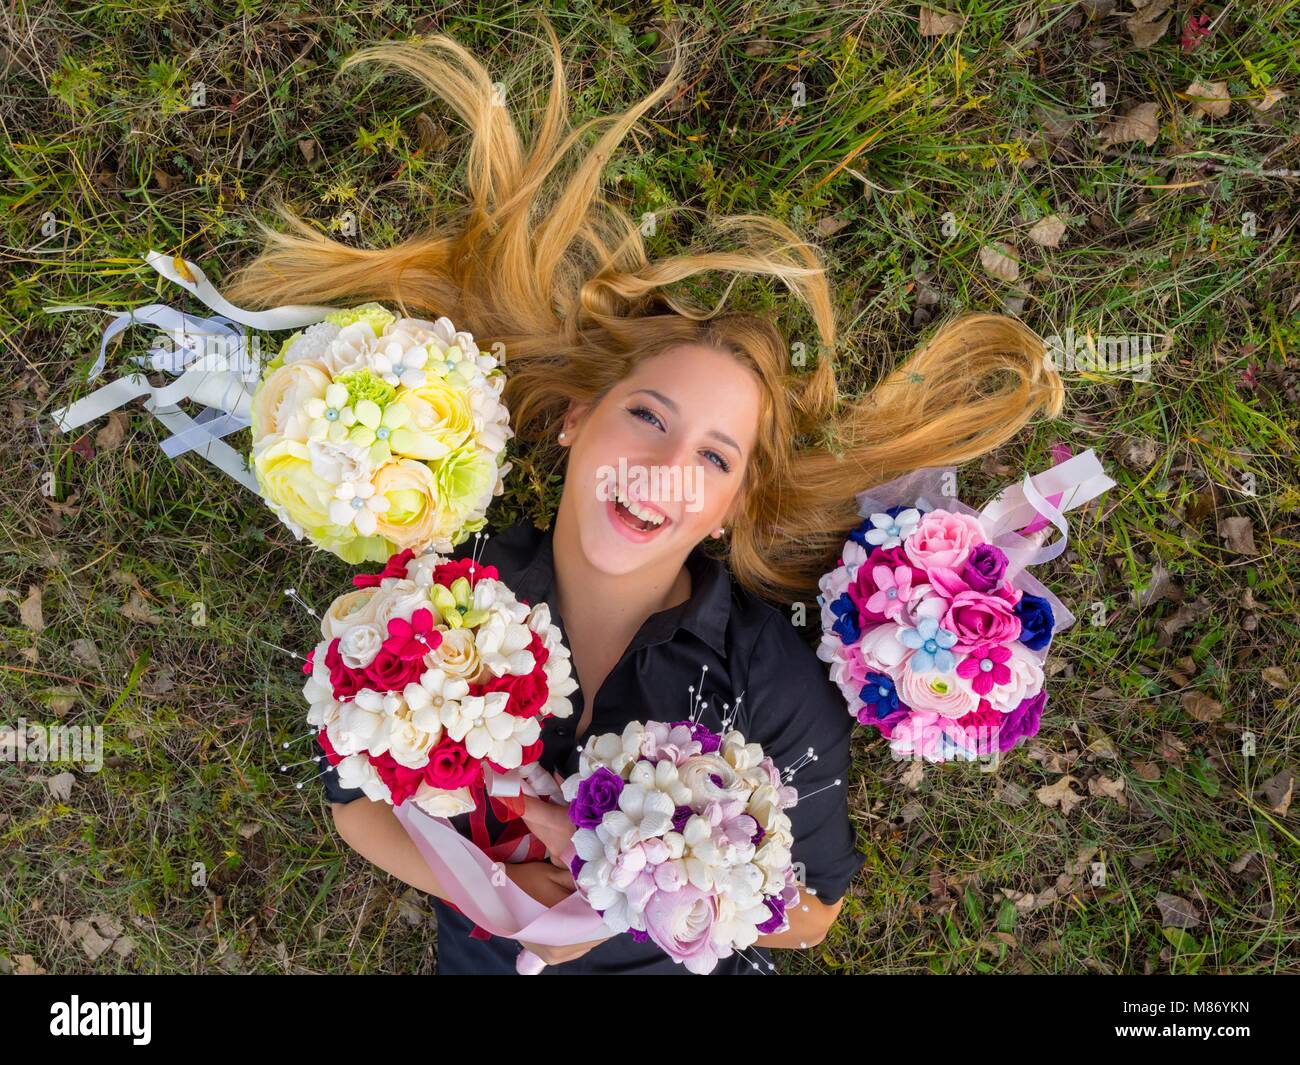 Blonde capelli sparsi sorridente felice ridendo ritratto headshot adolescente steso sulla sua schiena tra colorati fiori bouquet Foto Stock